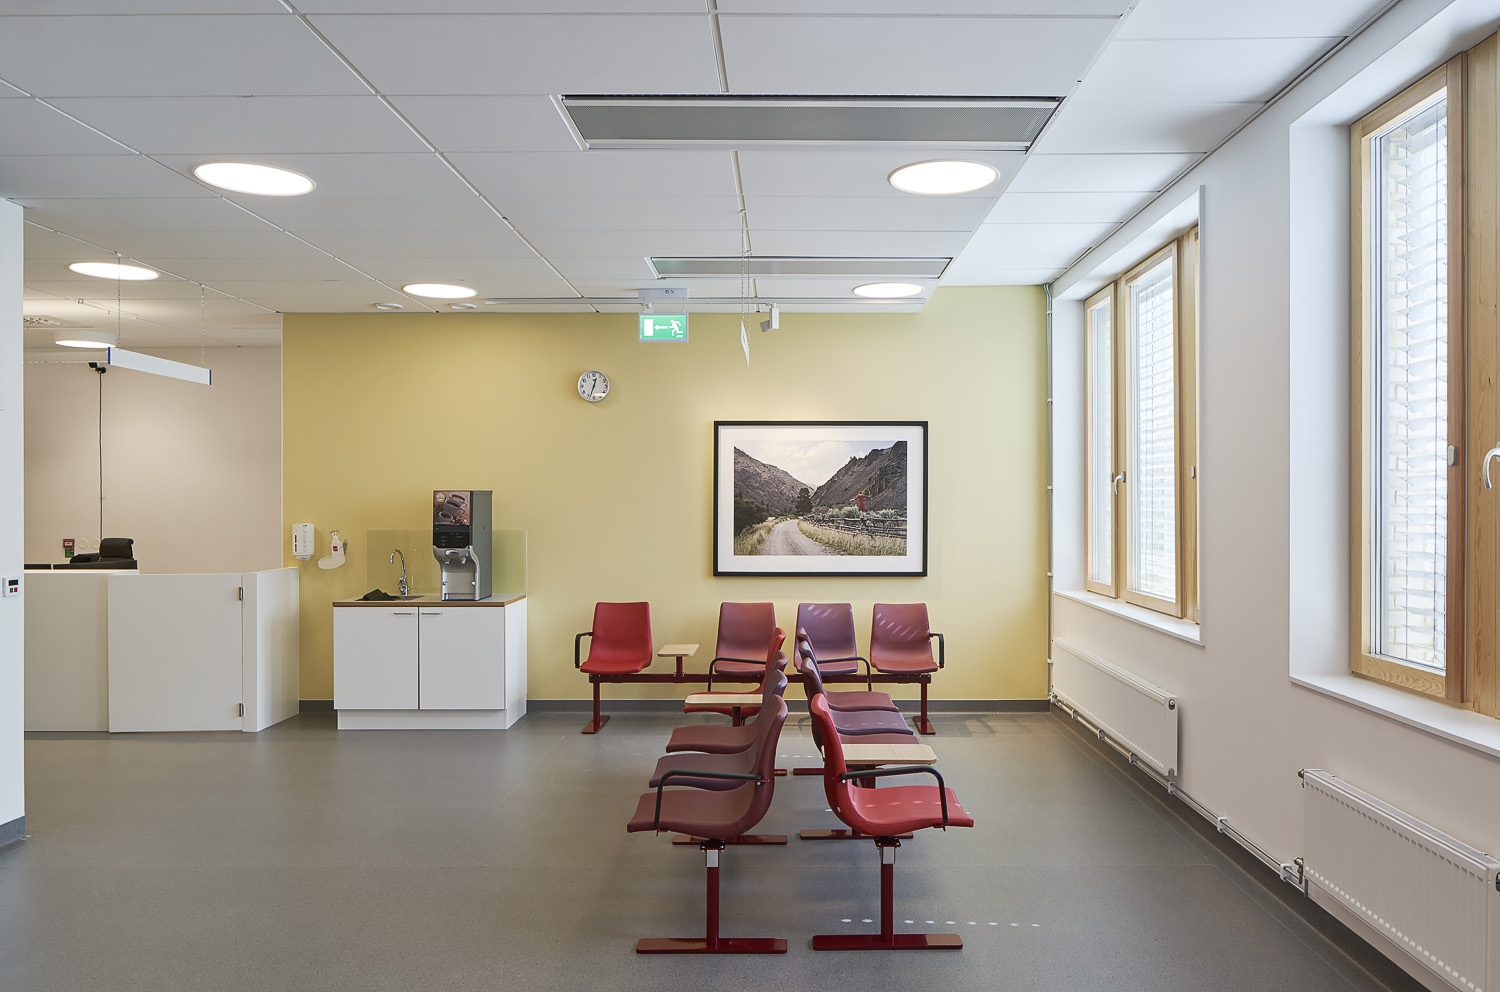 Väntrum för MR och strålbehandling